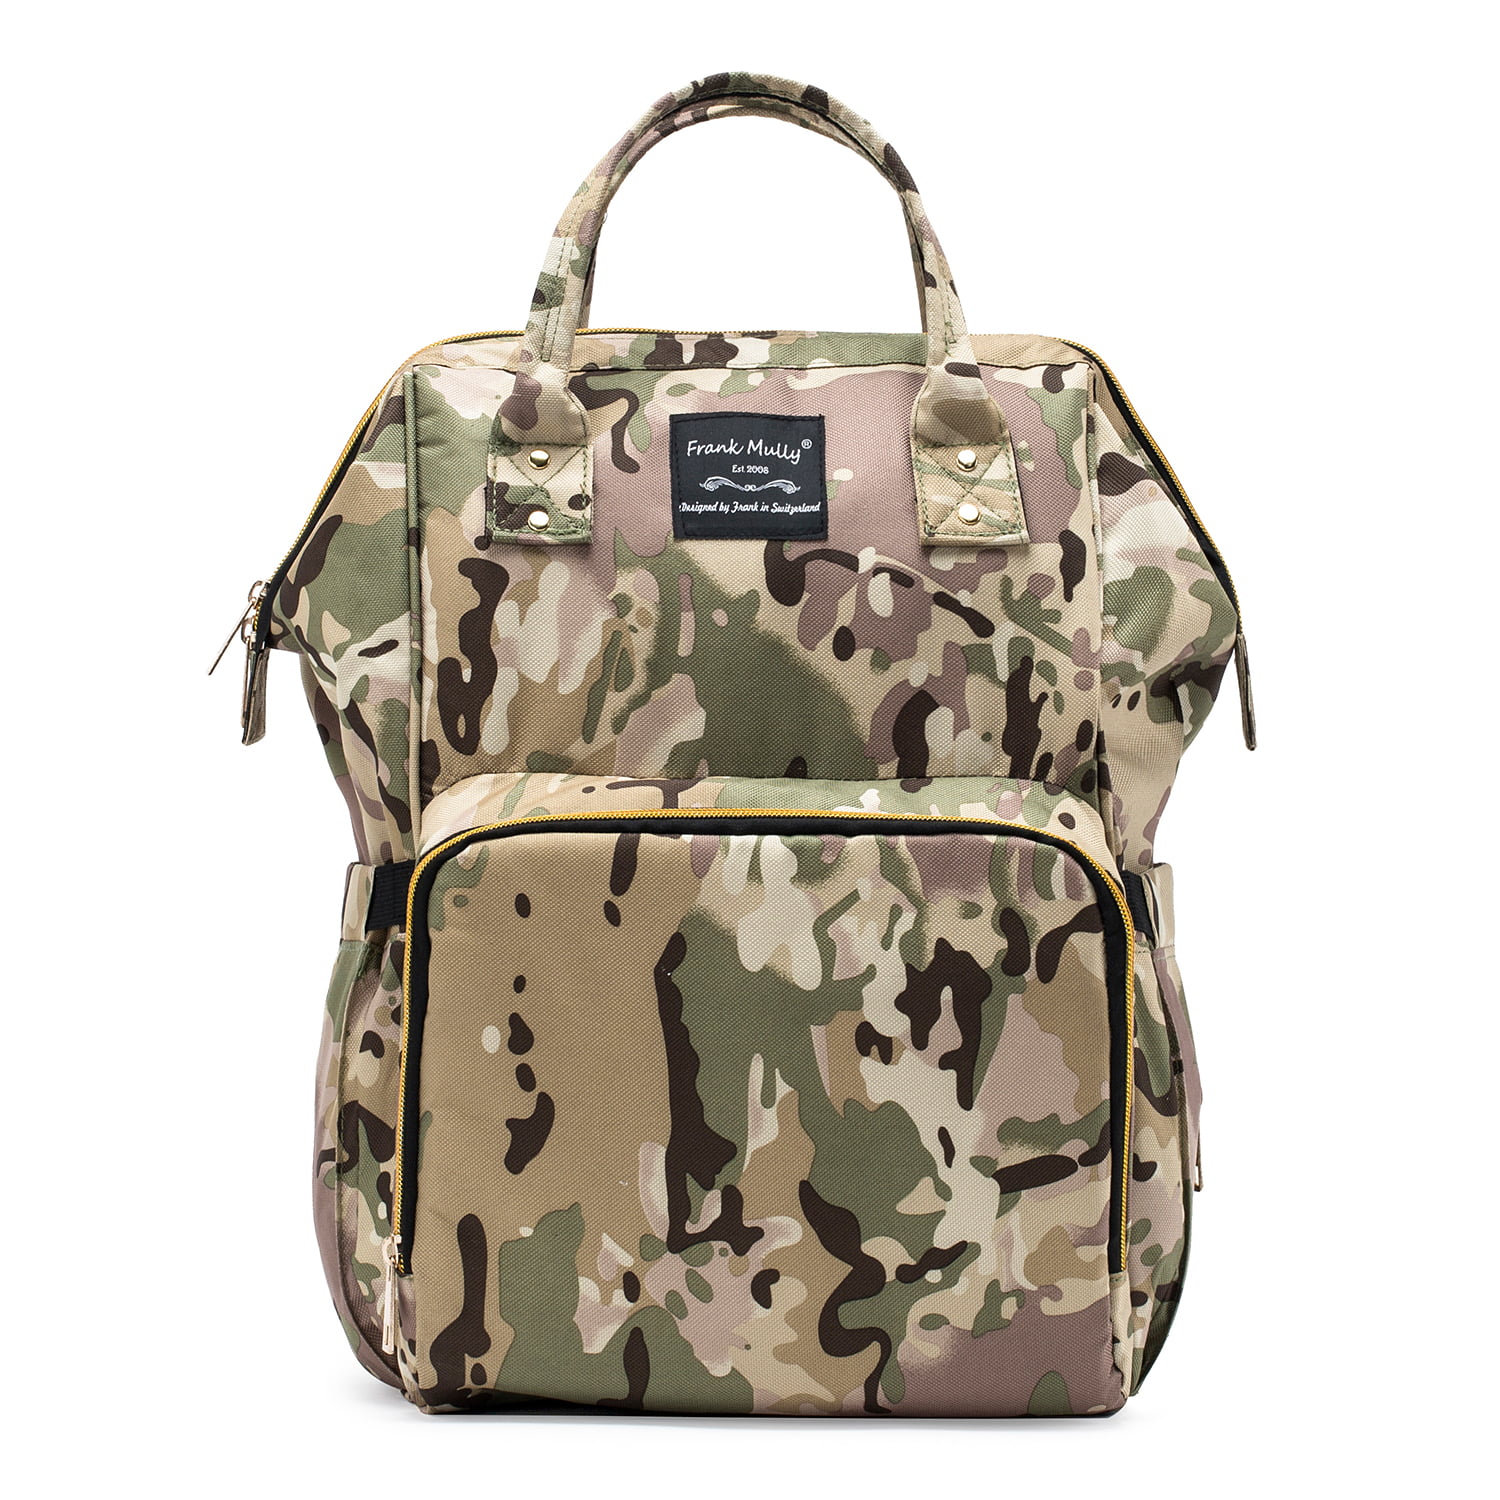 SoHo Diaper Bag Backpack, Metropolitan, Camo, 5 Piece Set - Walmart.com